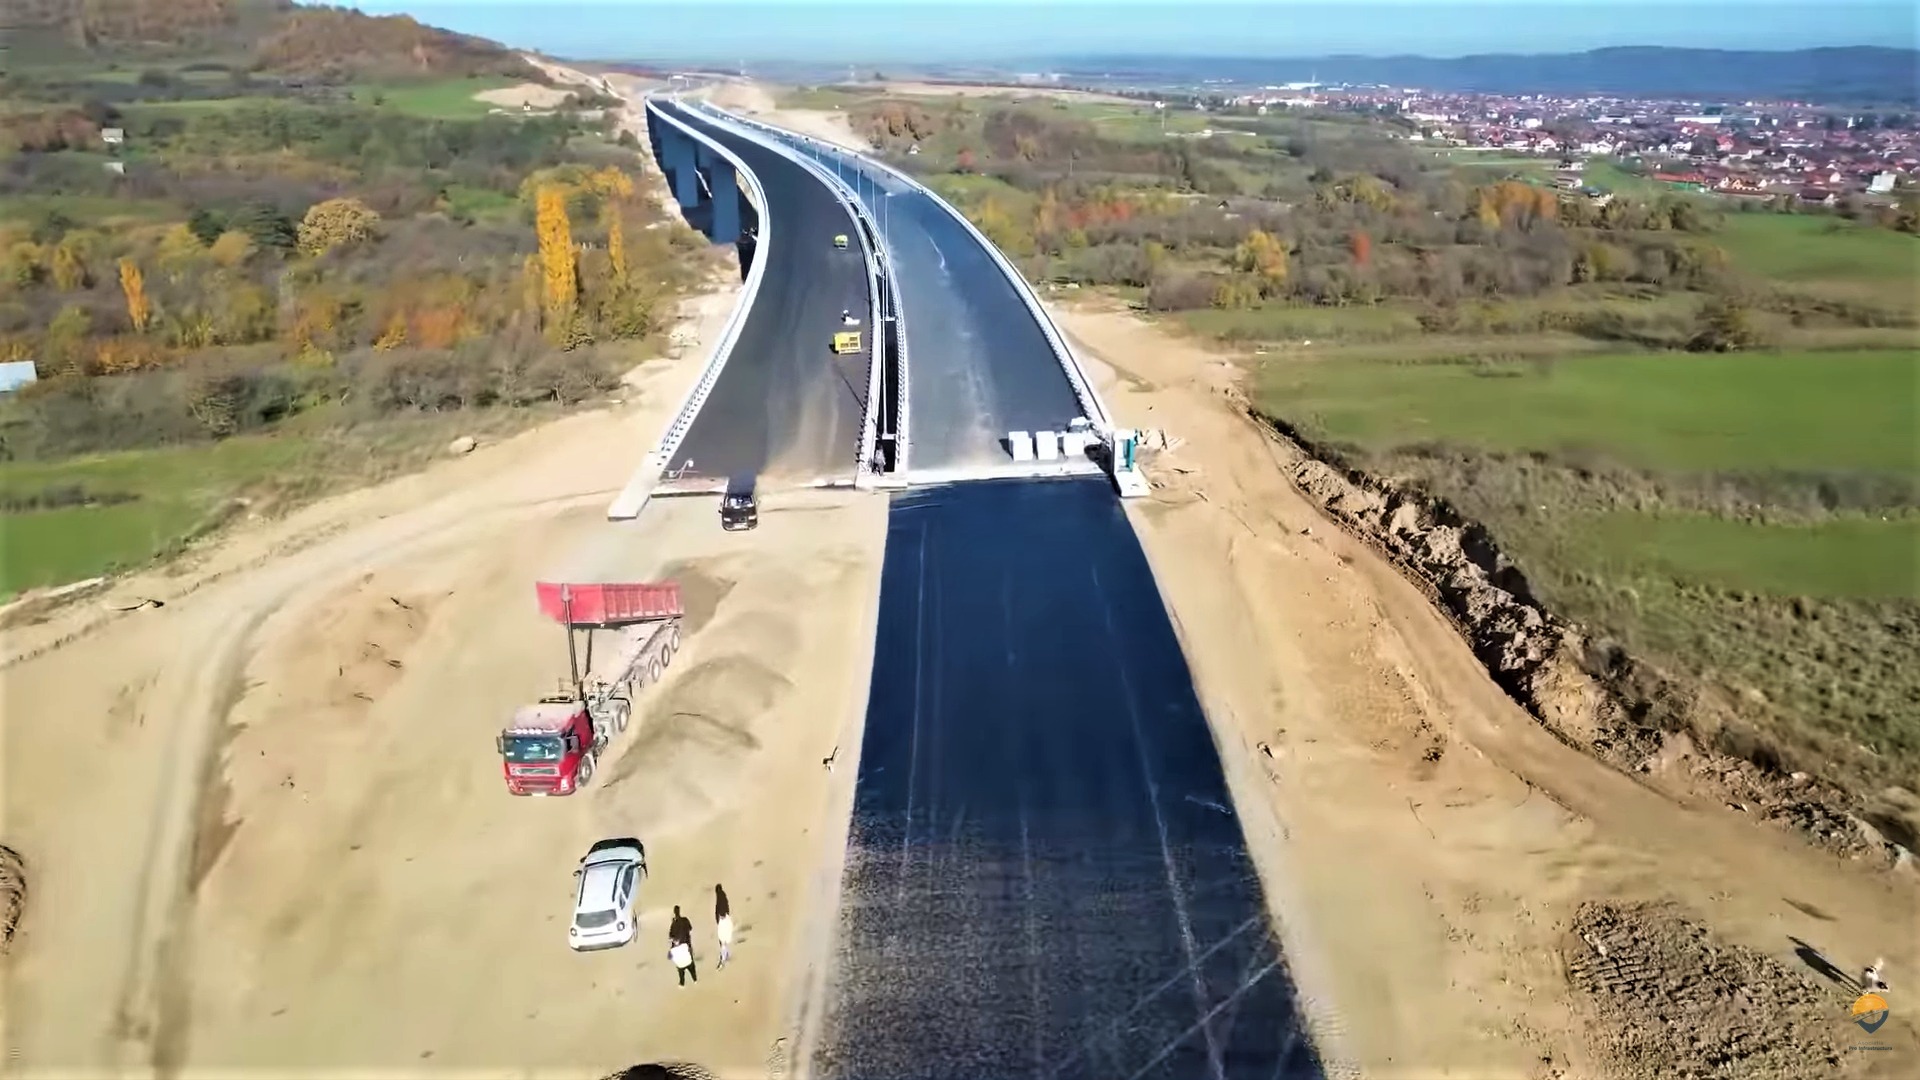 ONG: Umblă vorba prin târg că 15 decembrie este data asumată încă neoficial pentru inaugurarea primei secţiuni din mult-aşteptata Autostradă A1 Sibiu-Piteşti / Primii şi ultimii kilometri de autostradă din 2022